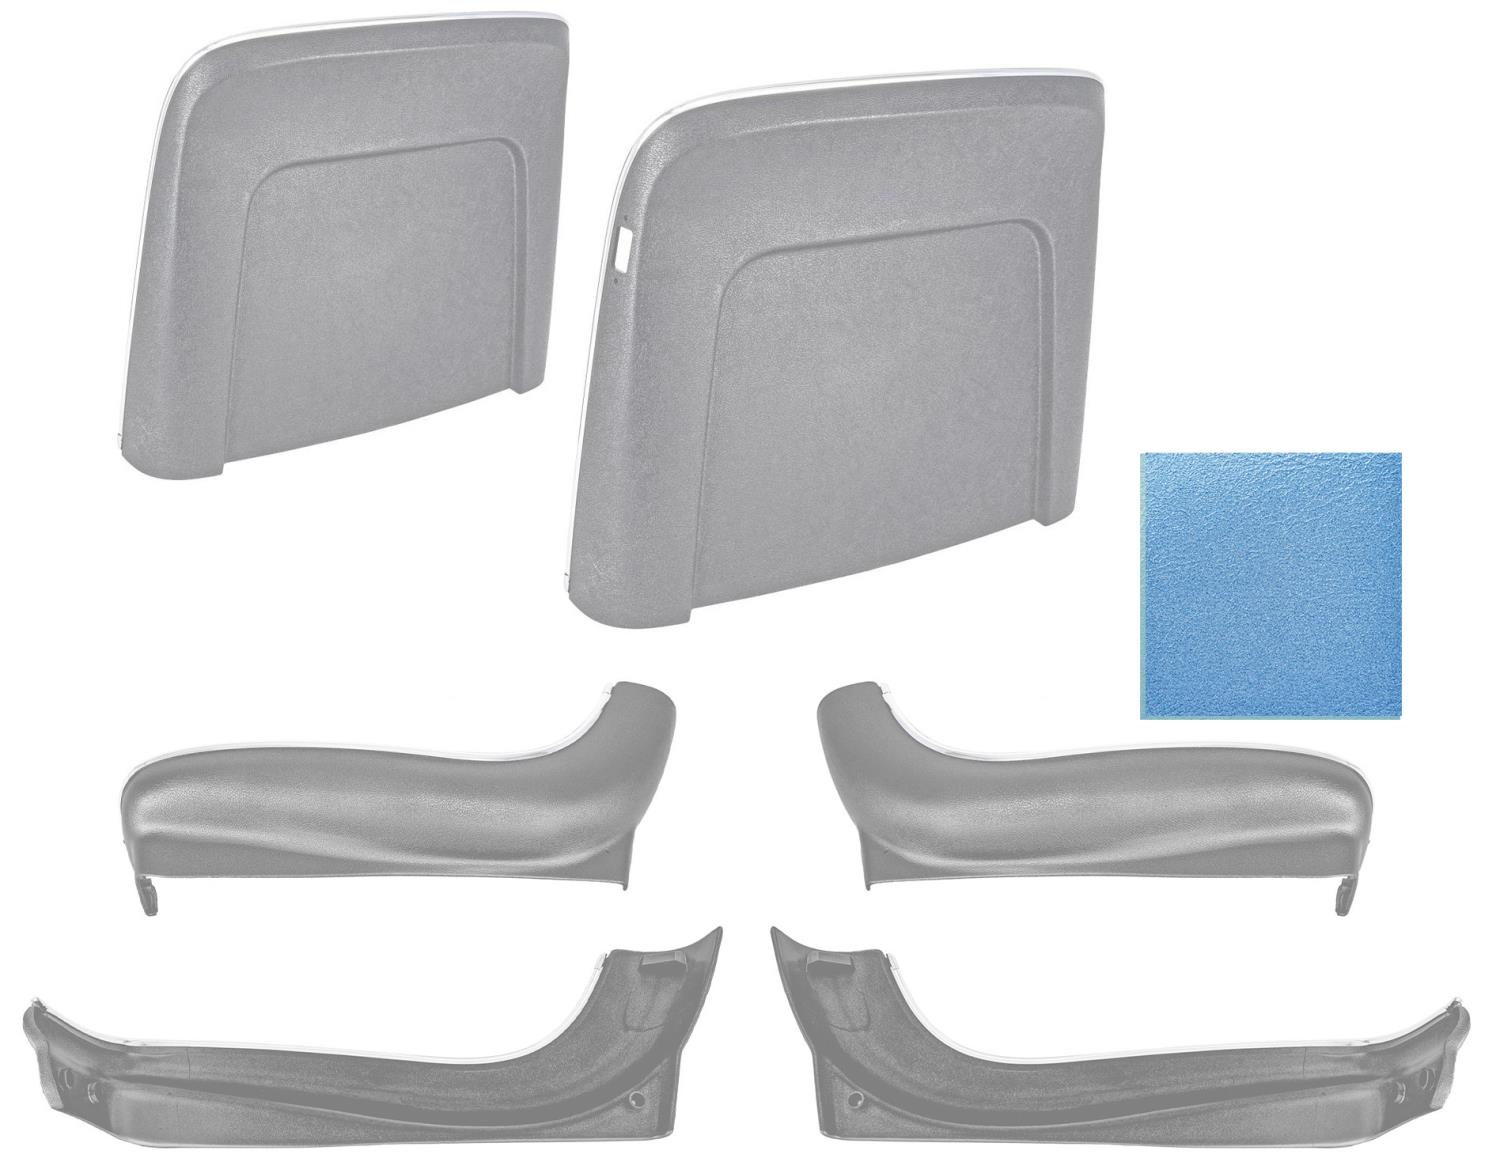 Seat Backs & Sides Kit Fits Select 1967 GM Models [Light Blue]